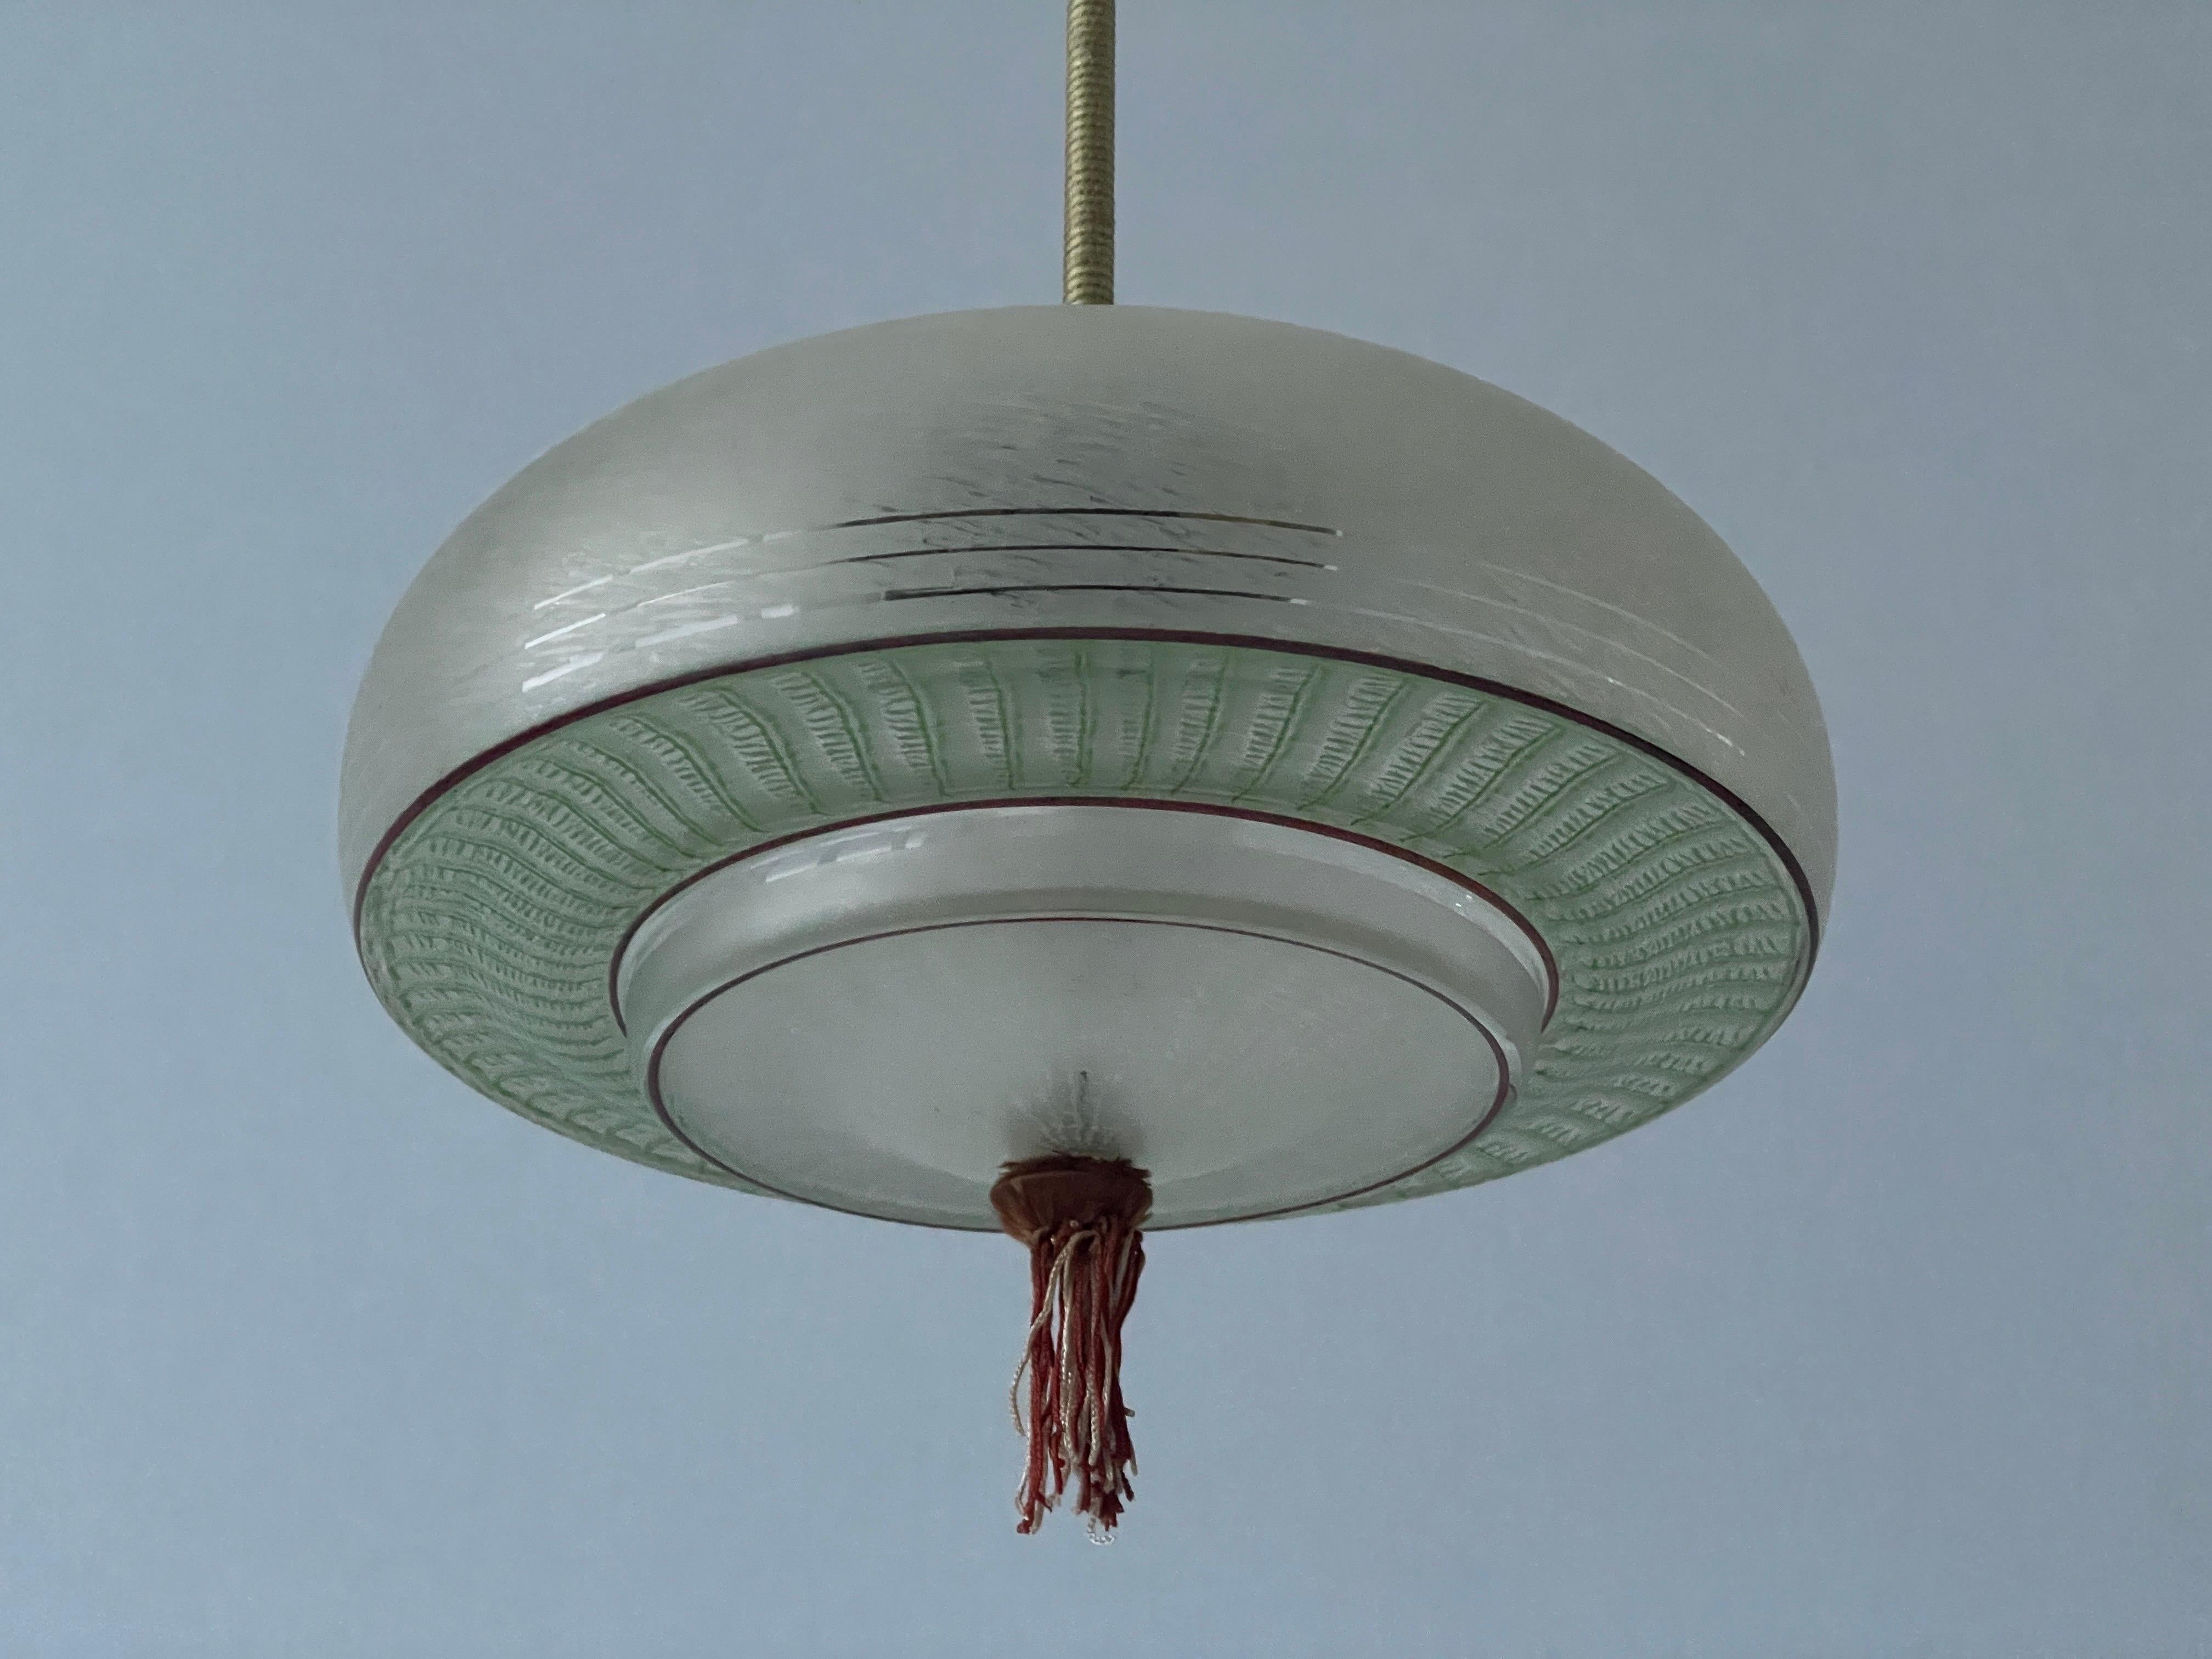 Plafonnier en verre vert de style Art déco, années 1960, Allemagne

Cette lampe fonctionne avec une ampoule E27.

Mesures : 
Hauteur : 50 cm
Diamètre et hauteur de l'abat-jour : 30 cm et 16 cm
